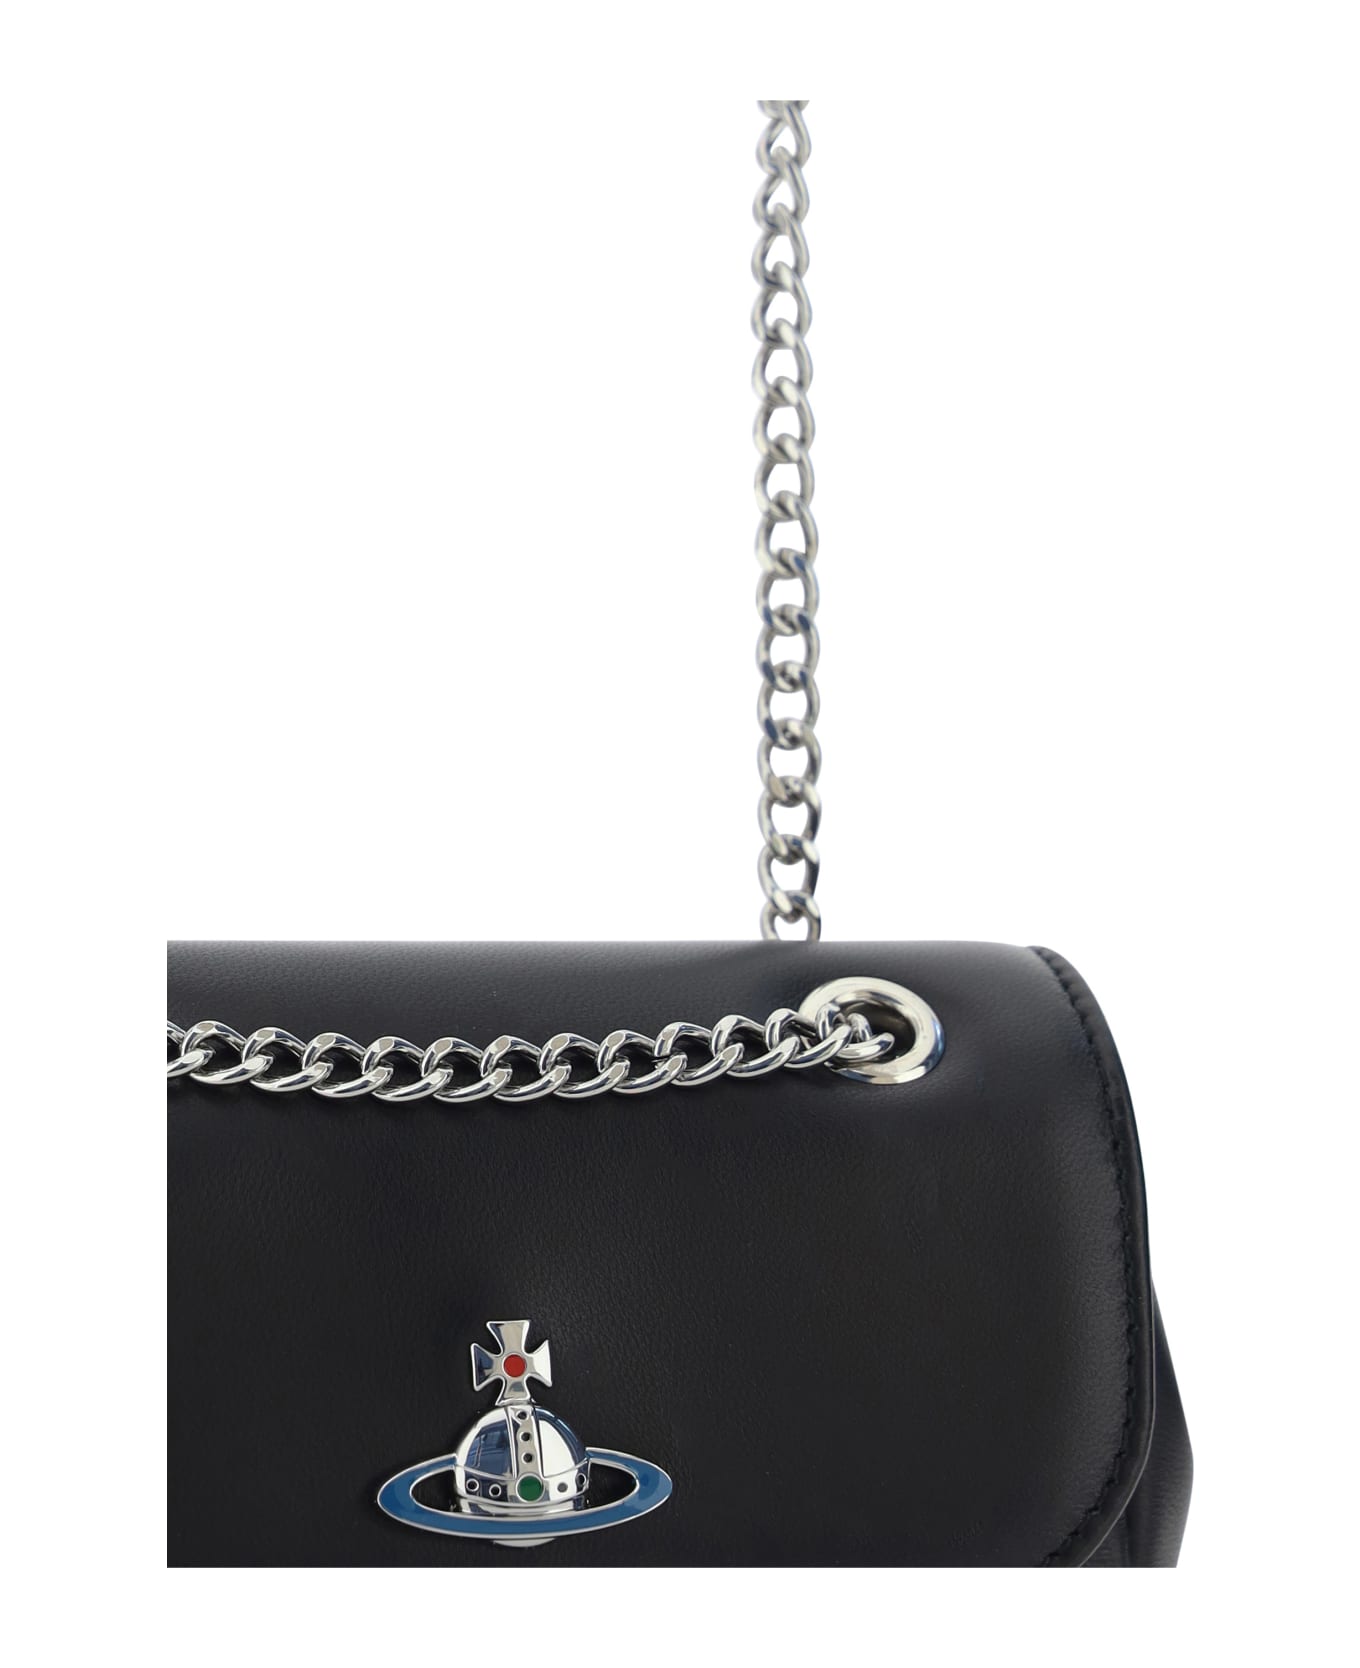 Vivienne Westwood Shoulder Bag - Black